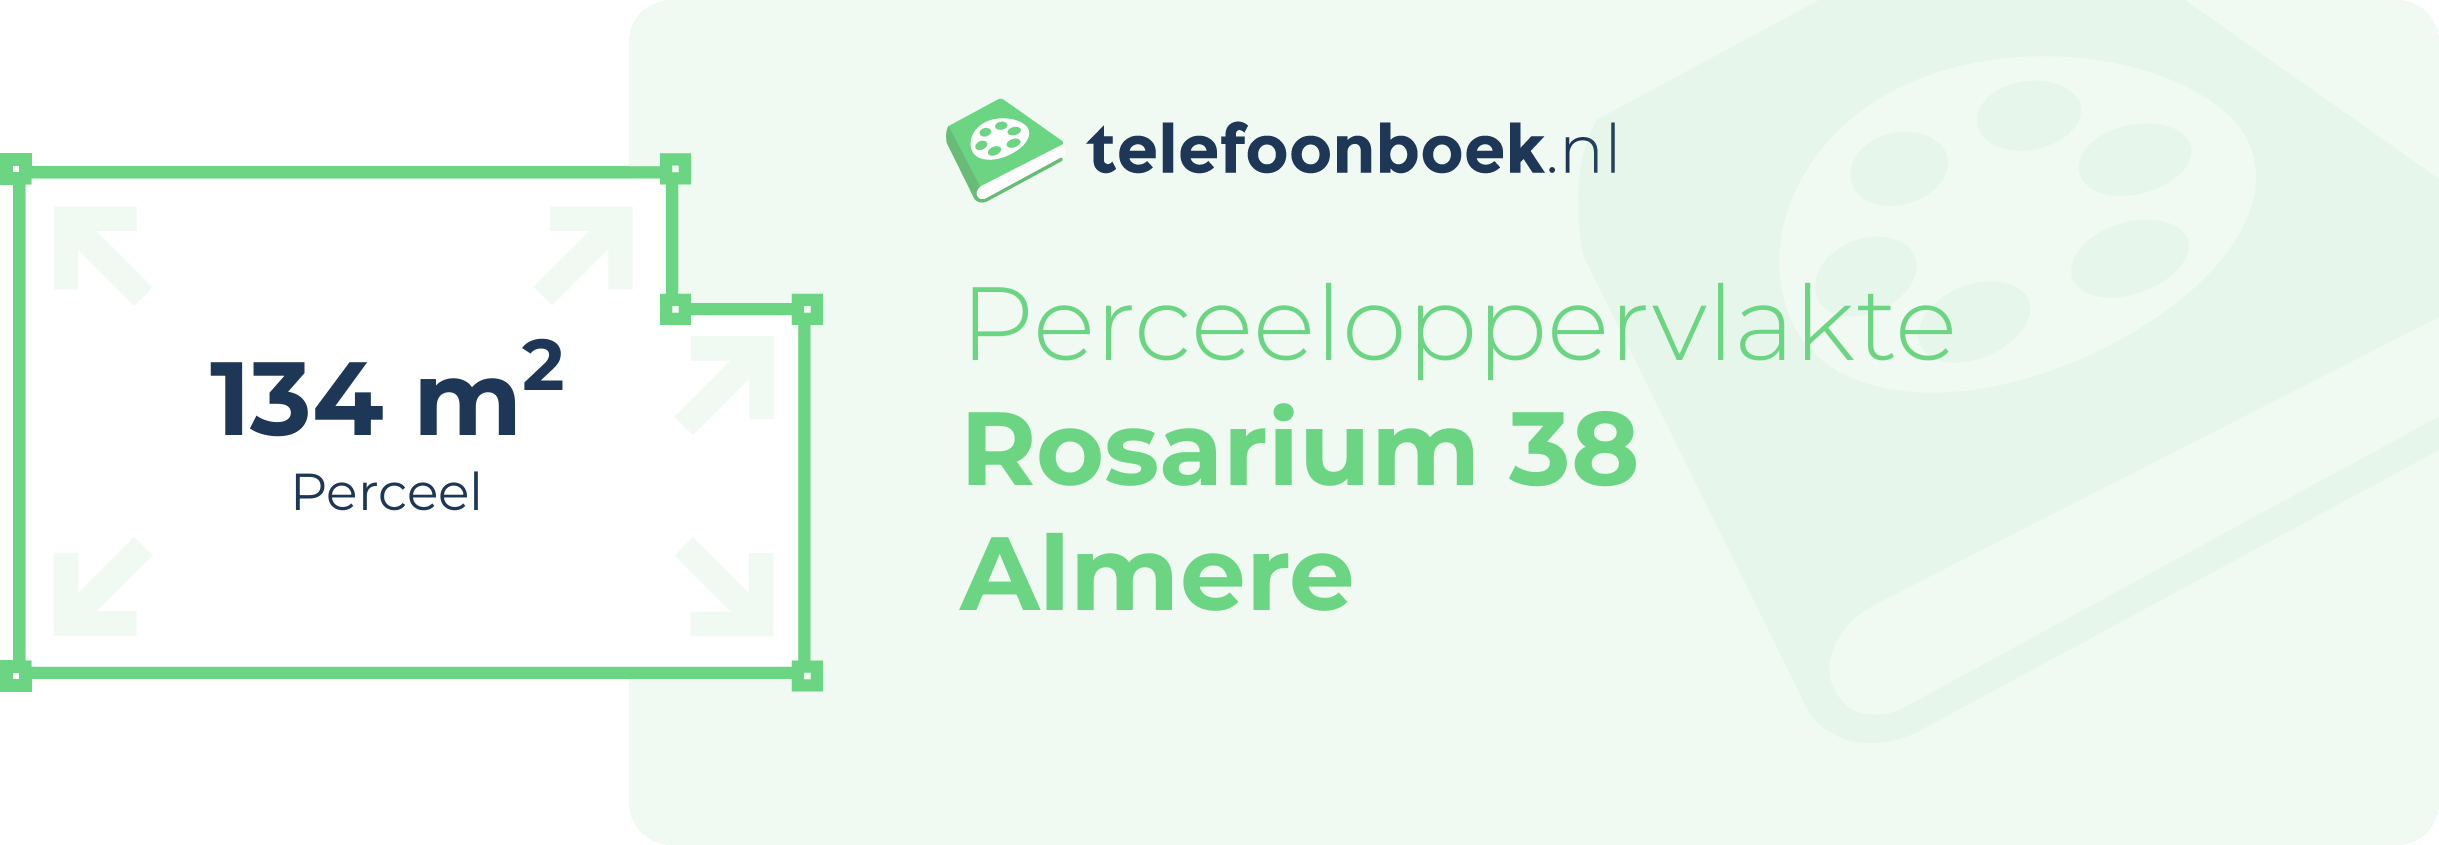 Perceeloppervlakte Rosarium 38 Almere